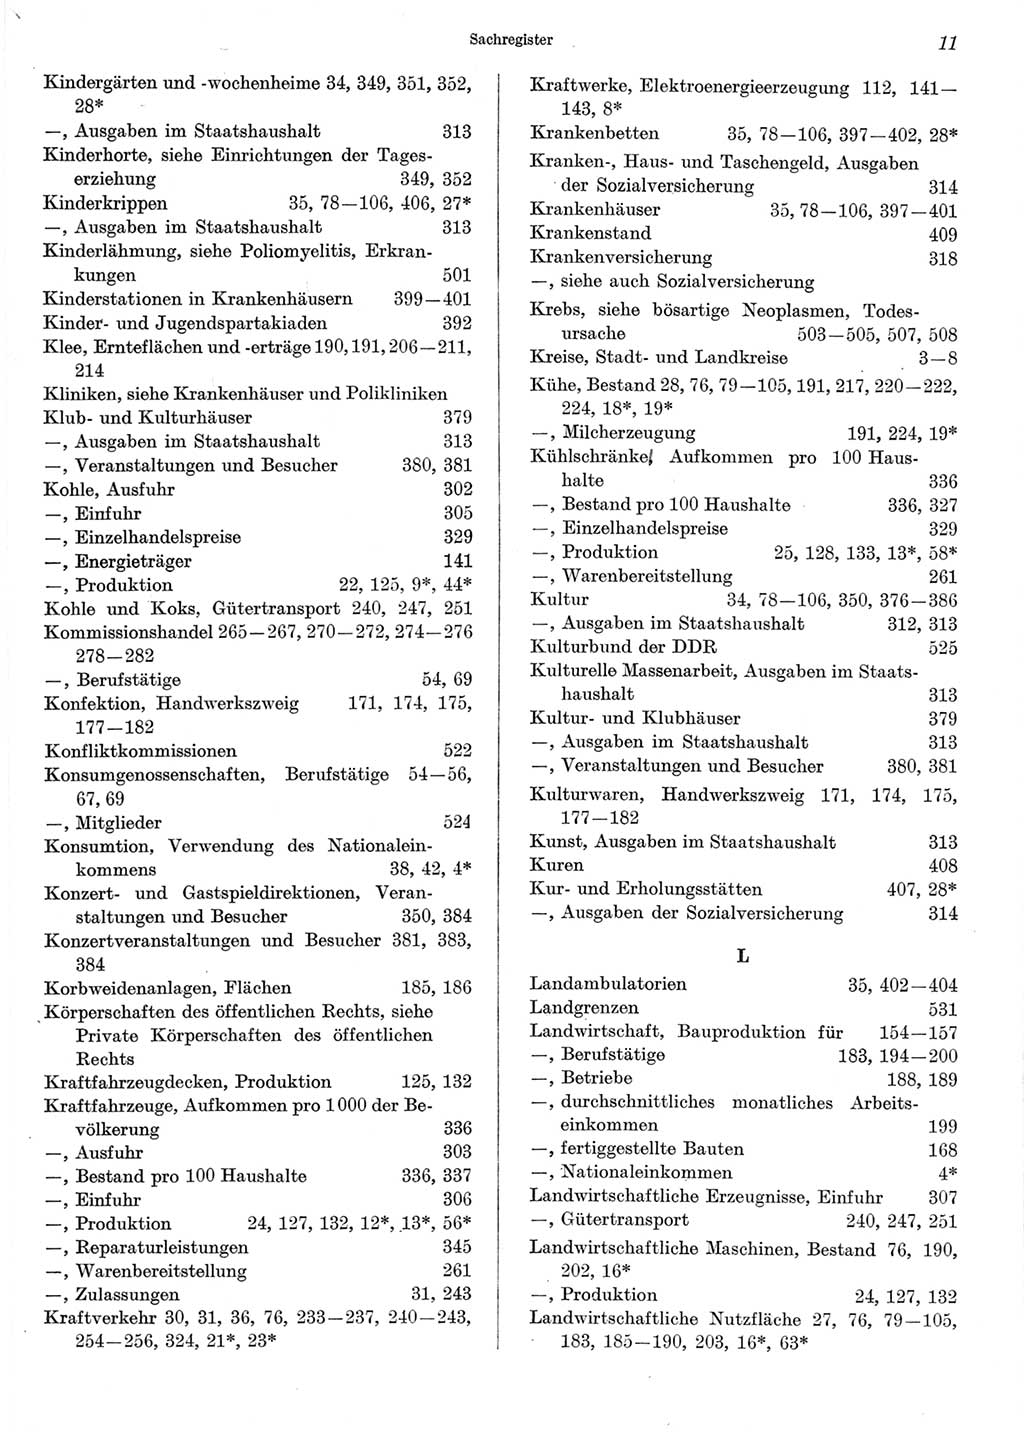 Statistisches Jahrbuch der Deutschen Demokratischen Republik (DDR) 1973, Seite 11 (Stat. Jb. DDR 1973, S. 11)